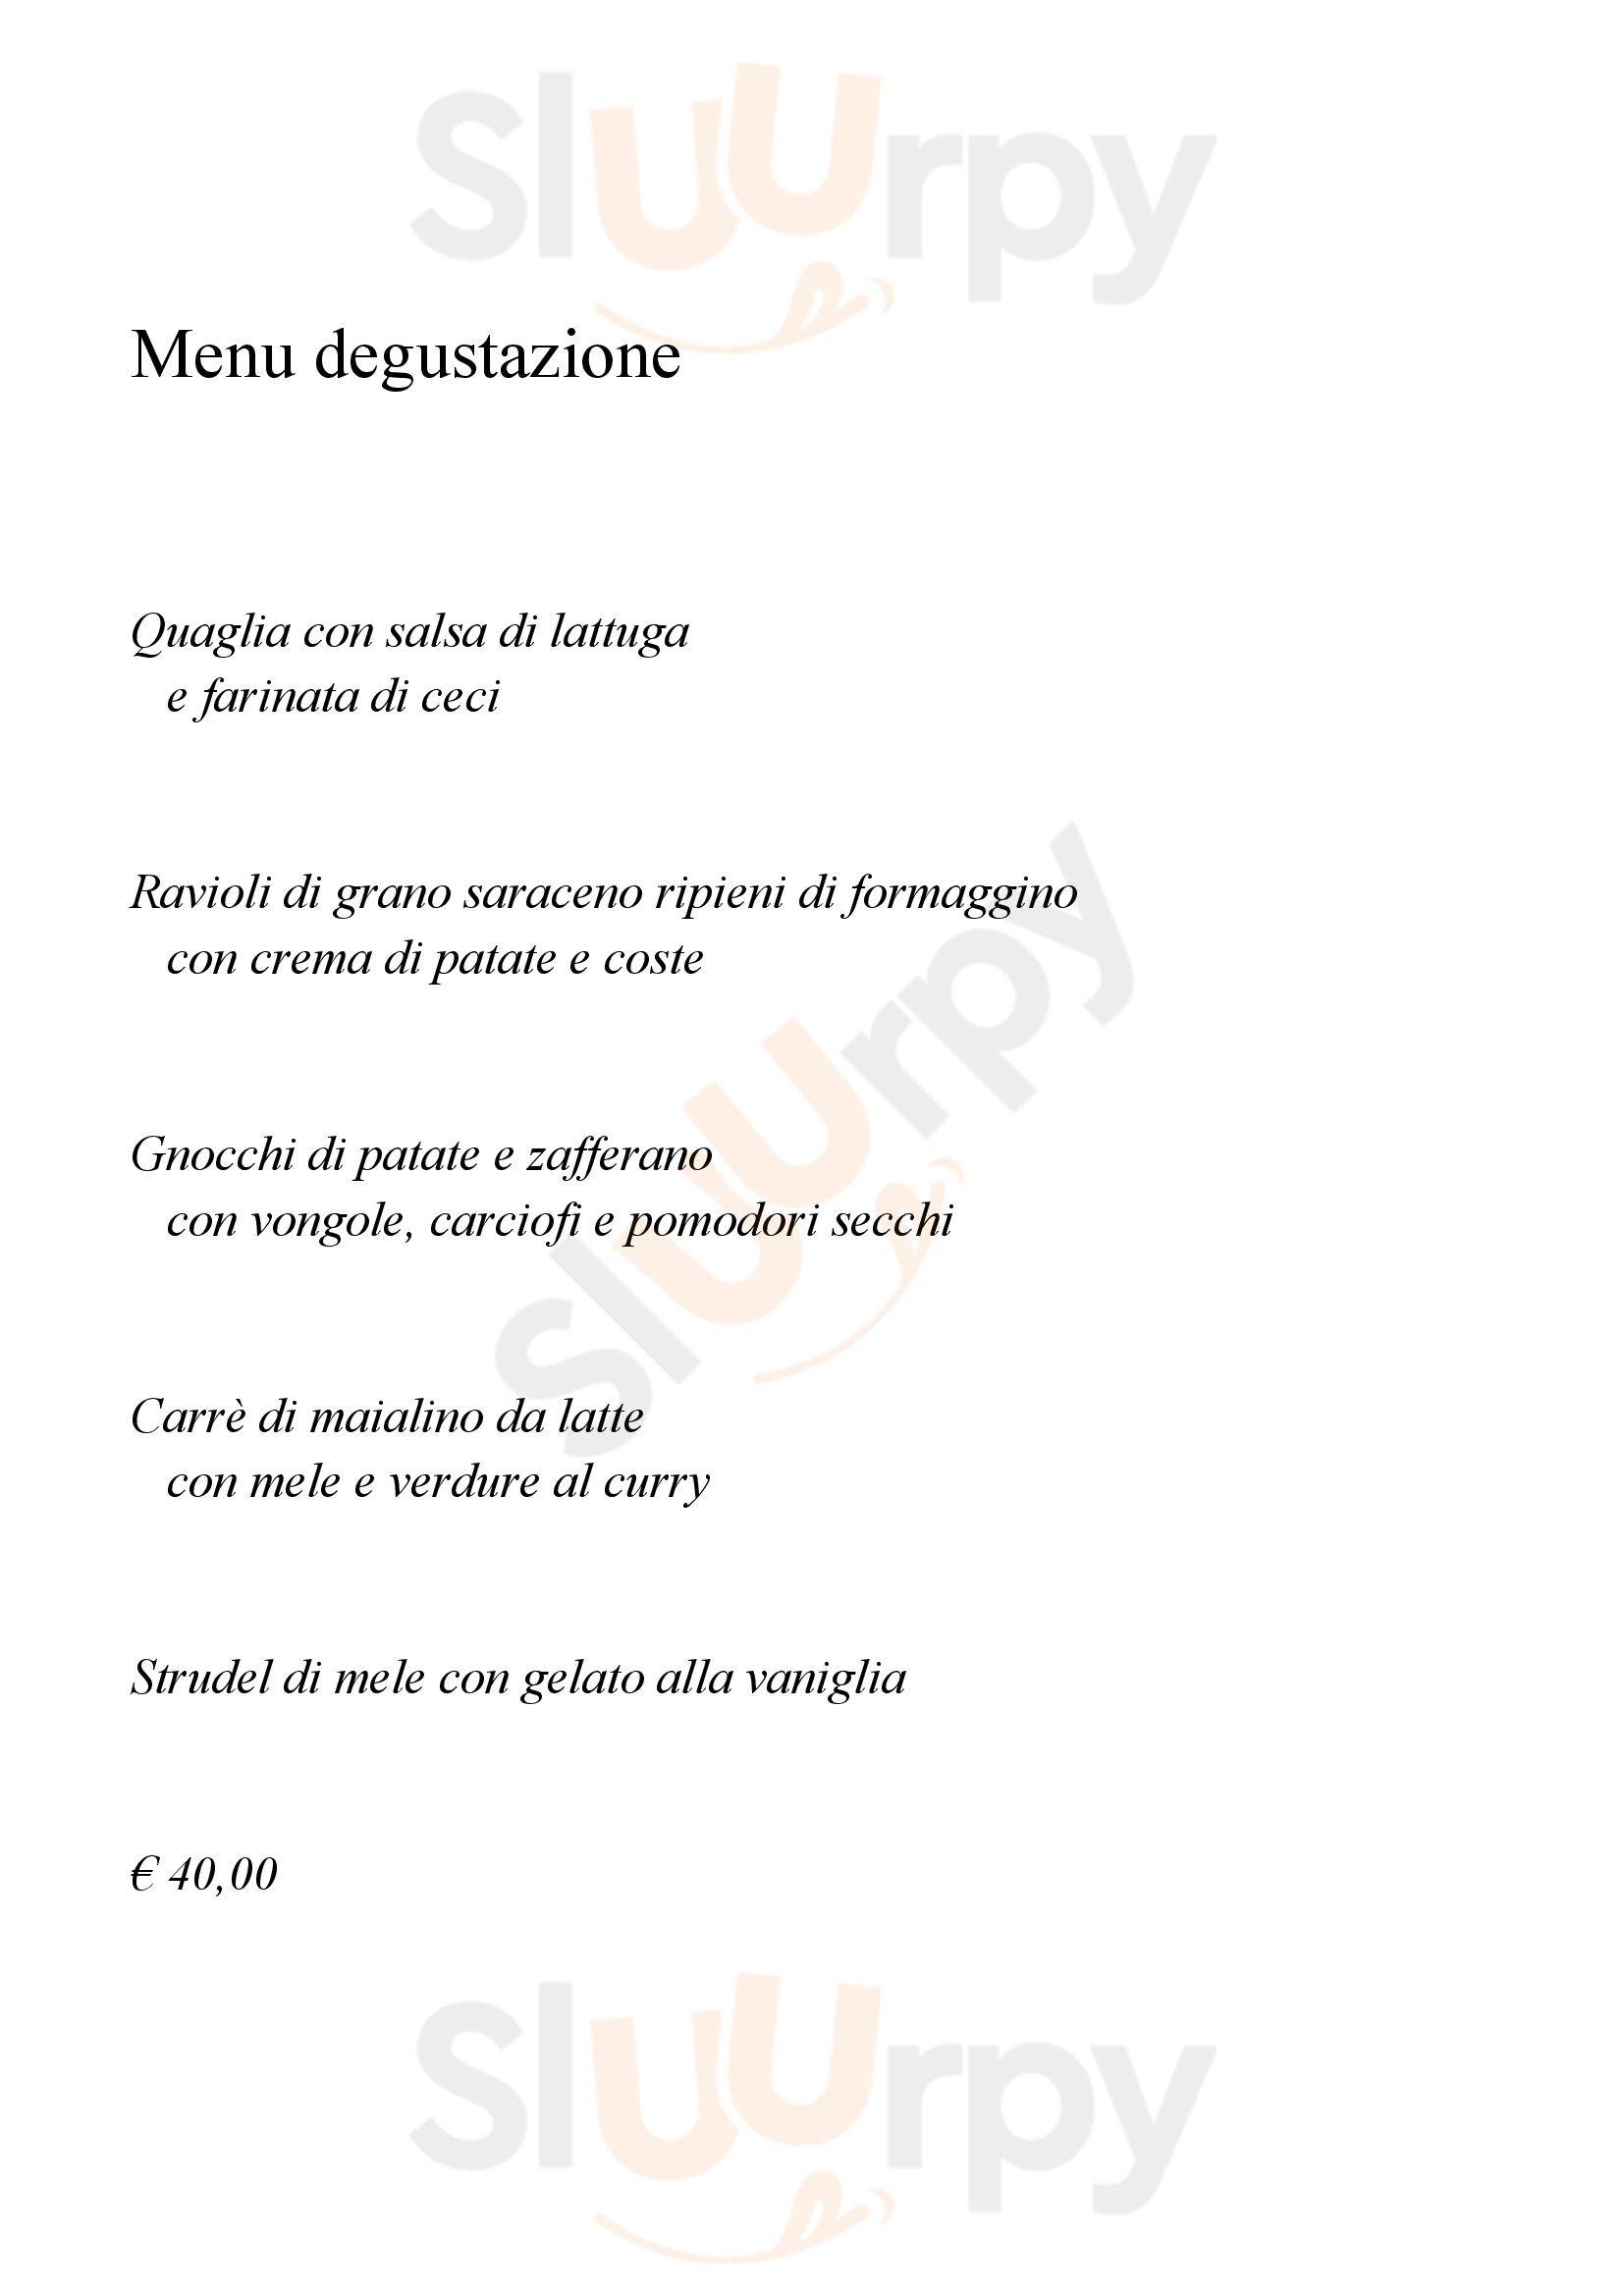 Ristorante La Piazzetta Montevecchia menù 1 pagina